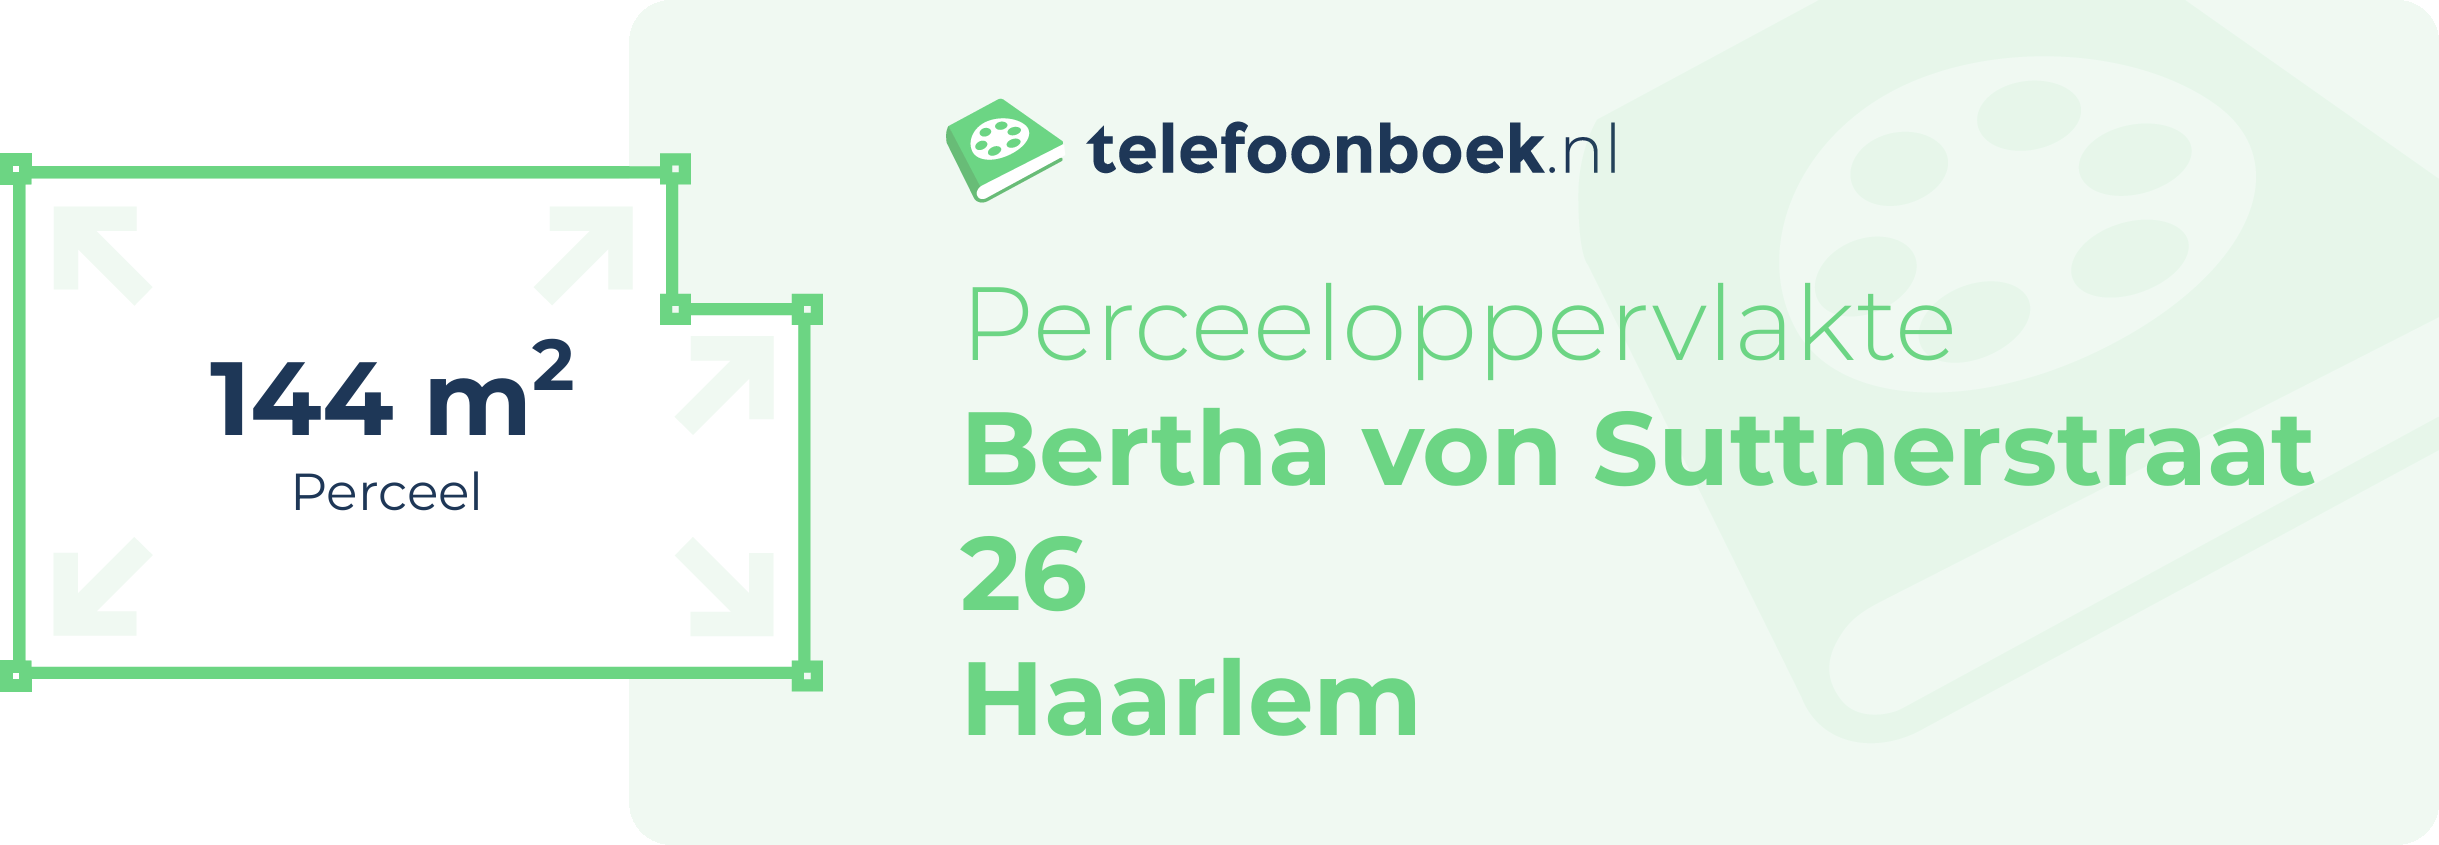 Perceeloppervlakte Bertha Von Suttnerstraat 26 Haarlem